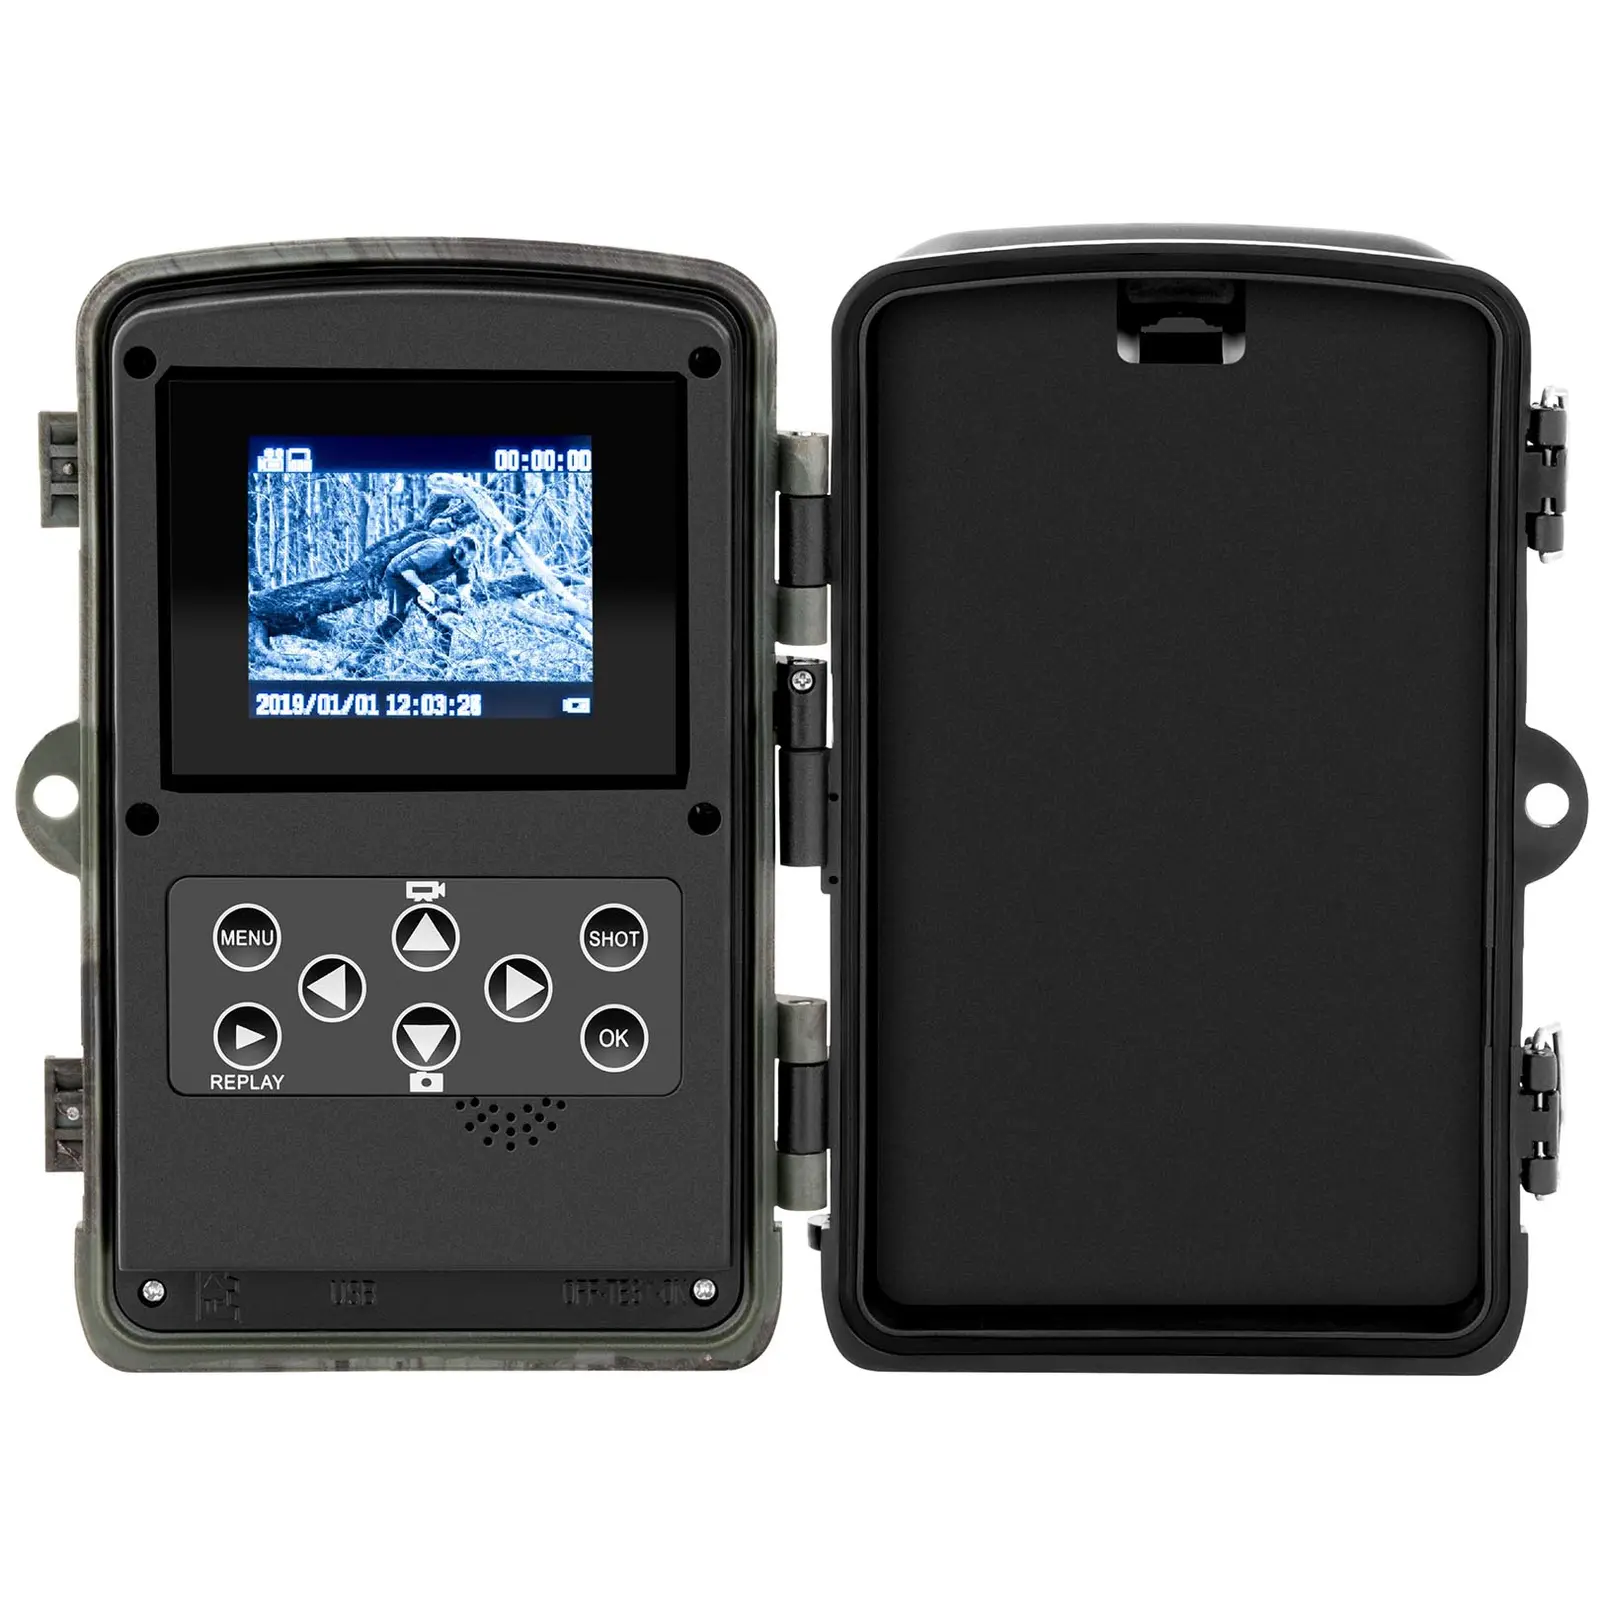 Wildkamera - 8 MP - 2.7K Full HD - 46 IR-LEDs - 20 m - 0,3 s - 2